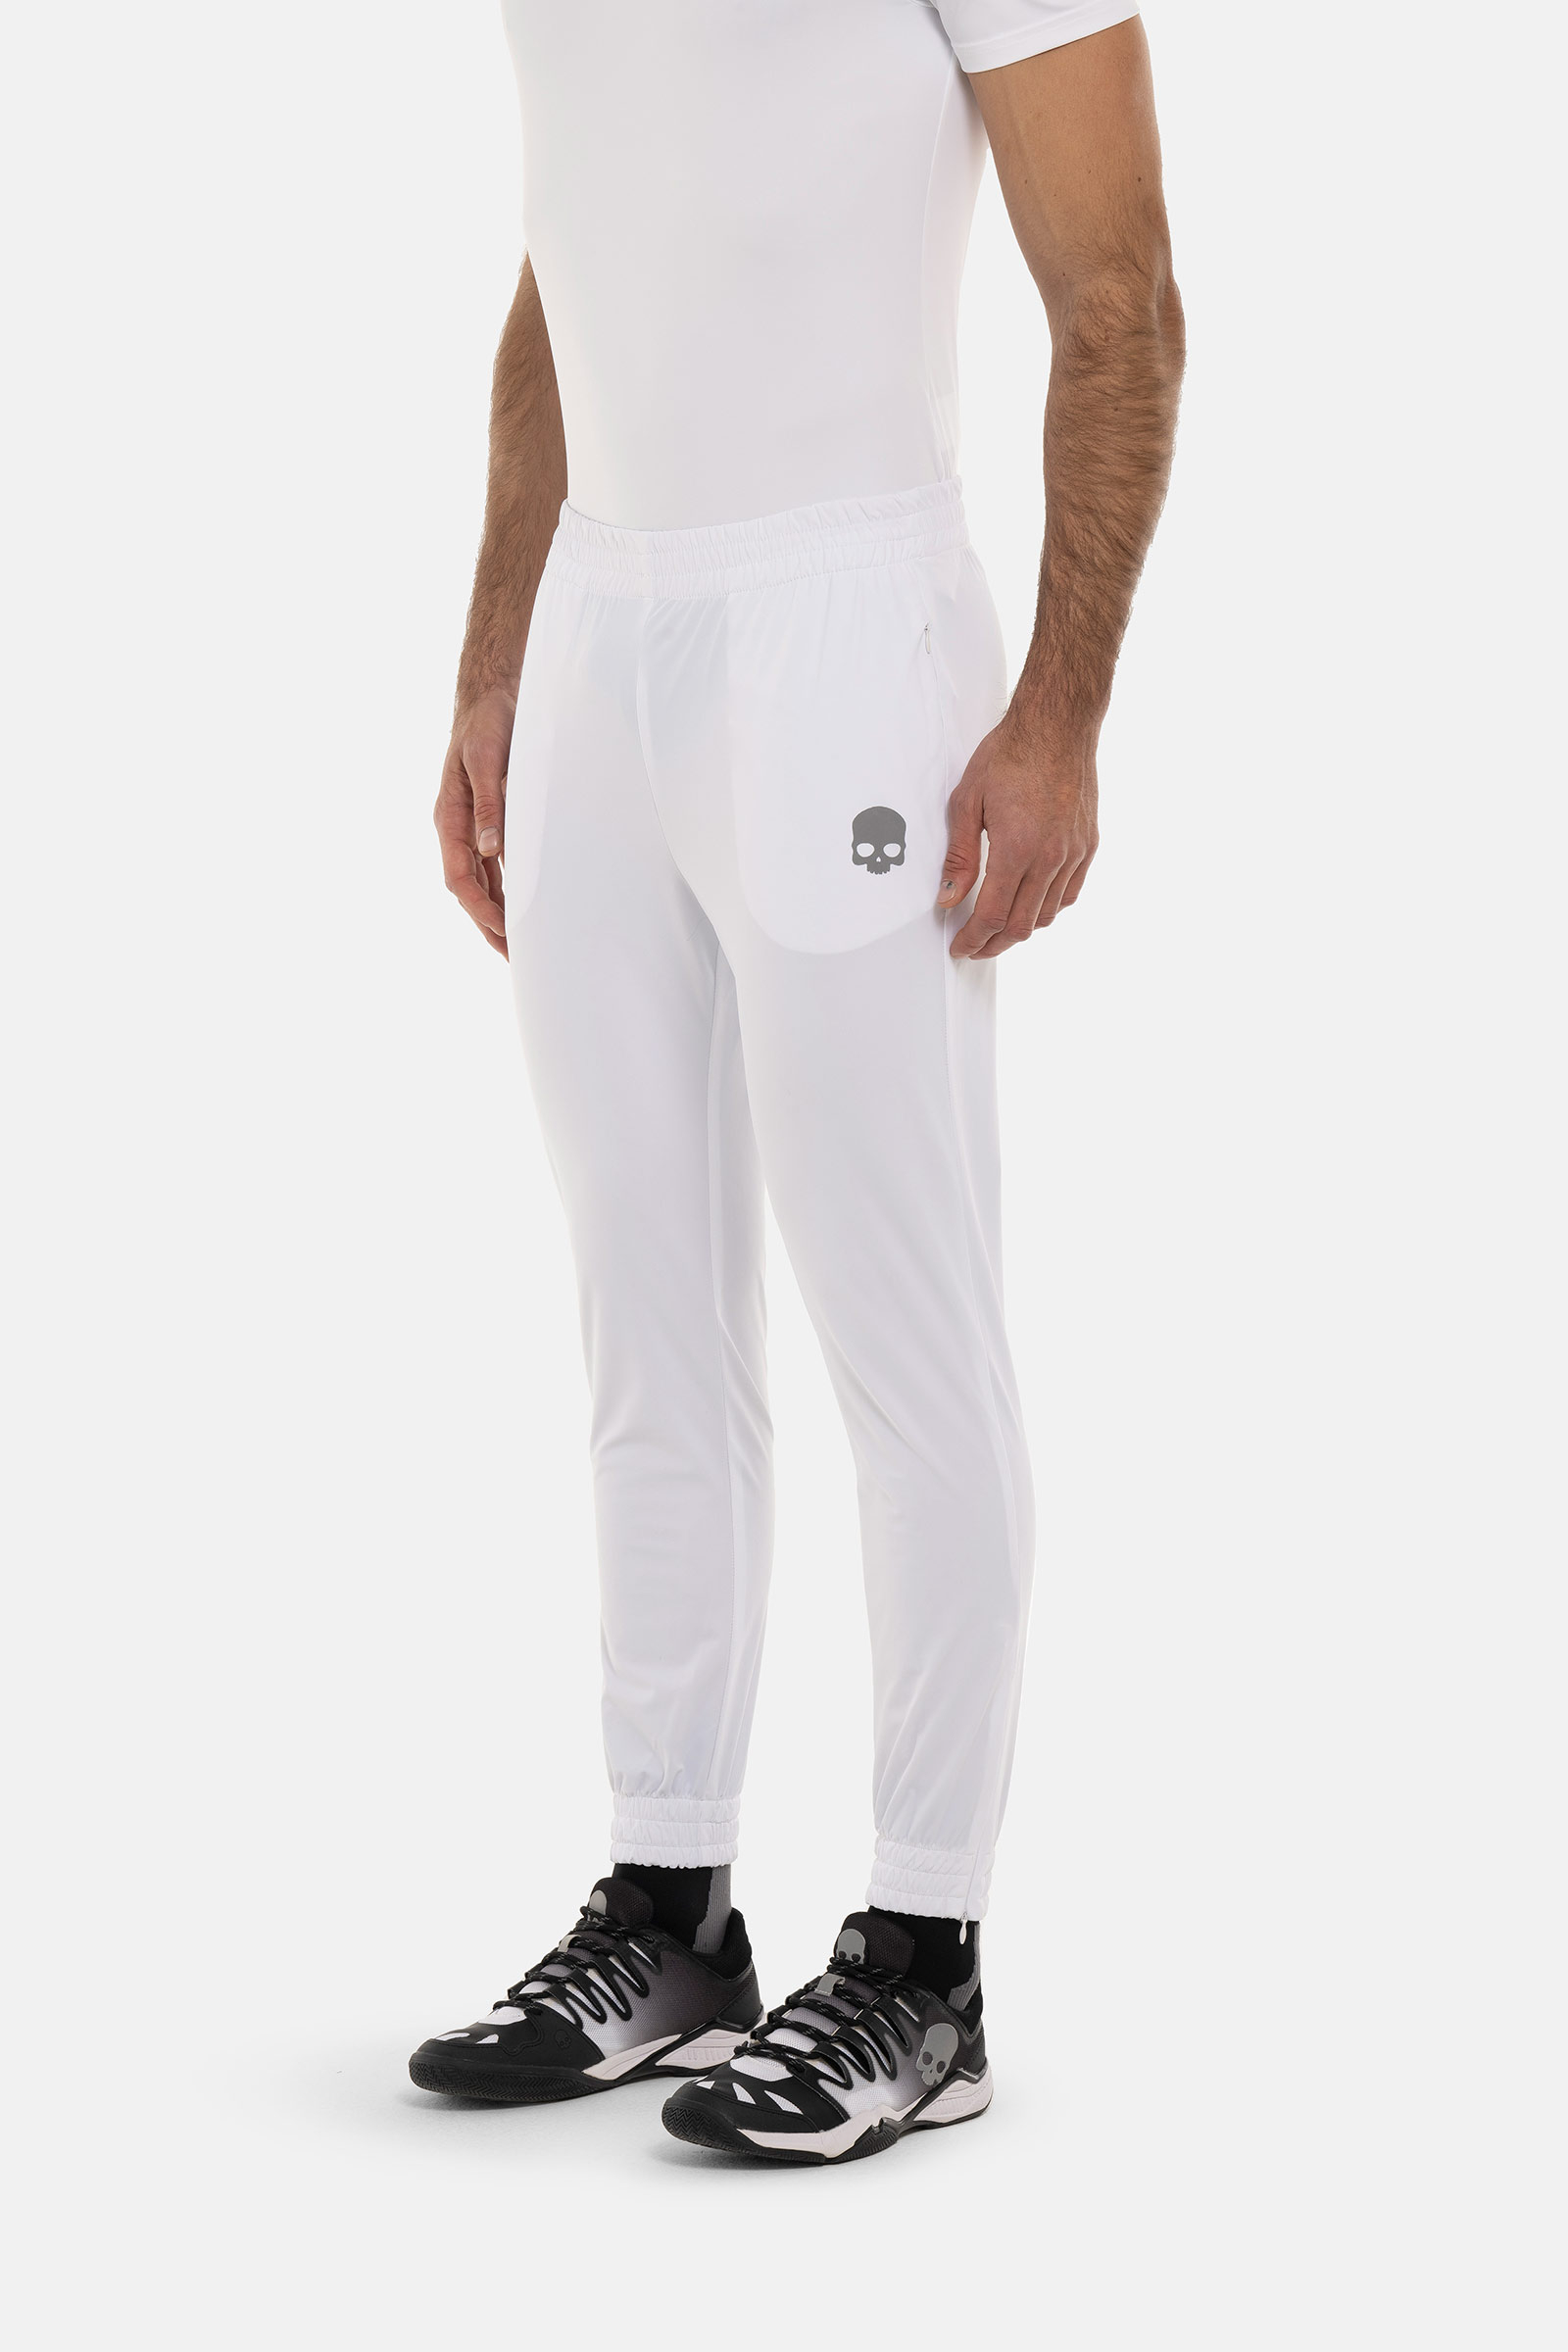 TECH PANTS SKULL - WHITE - Abbigliamento sportivo | Hydrogen